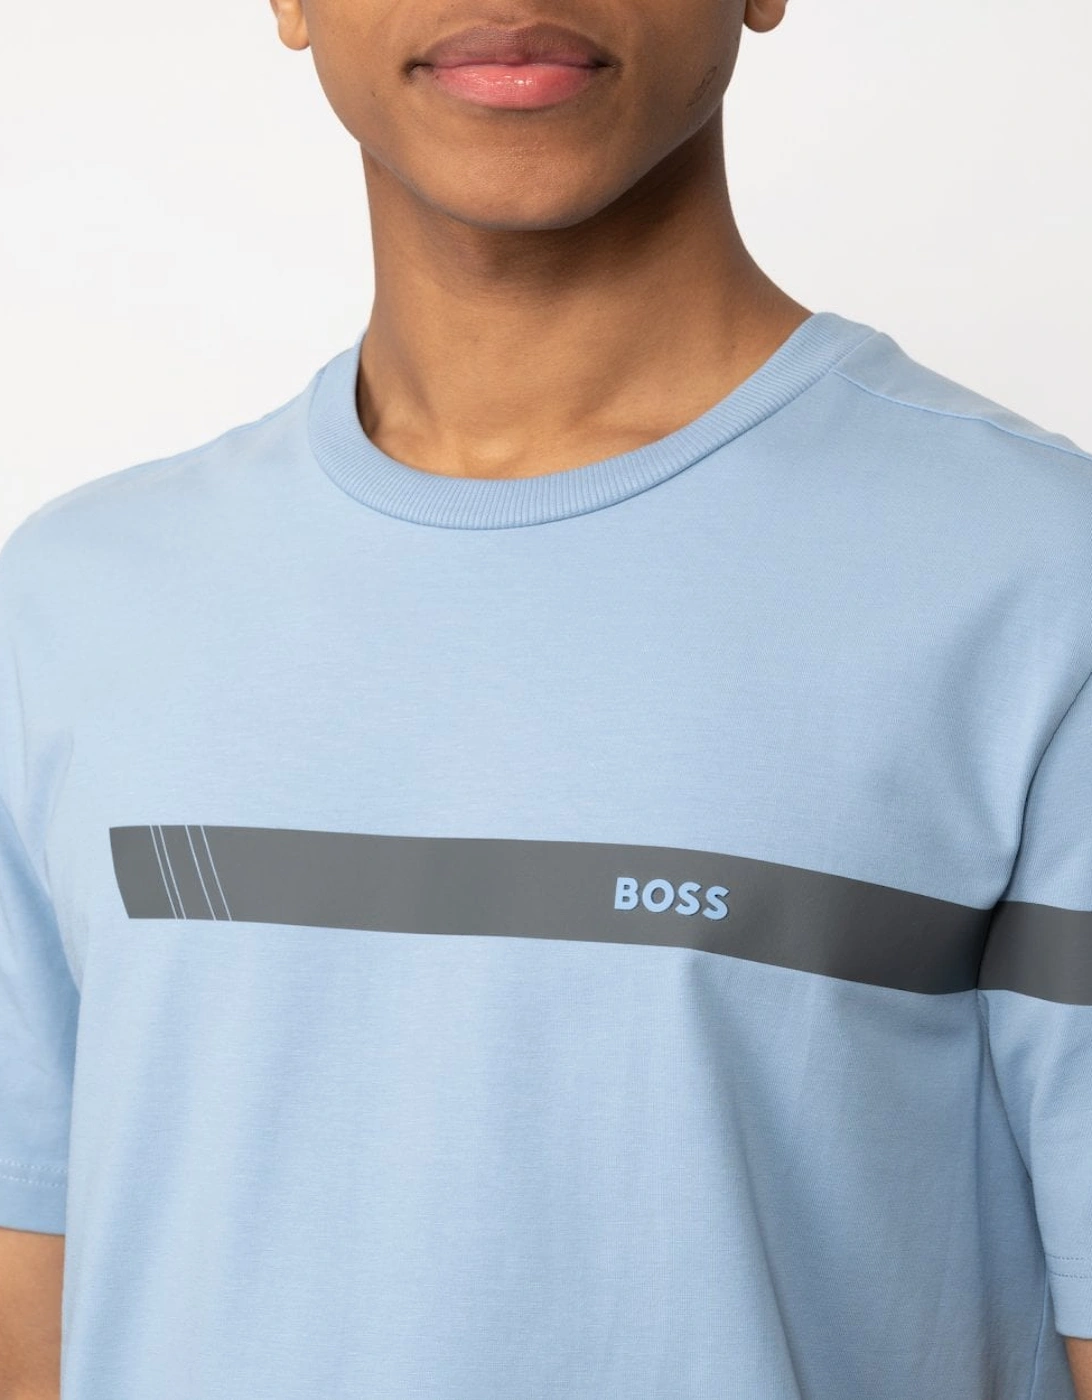 BOSS Green Tee 2 Mens Strip Logo T-Shirt